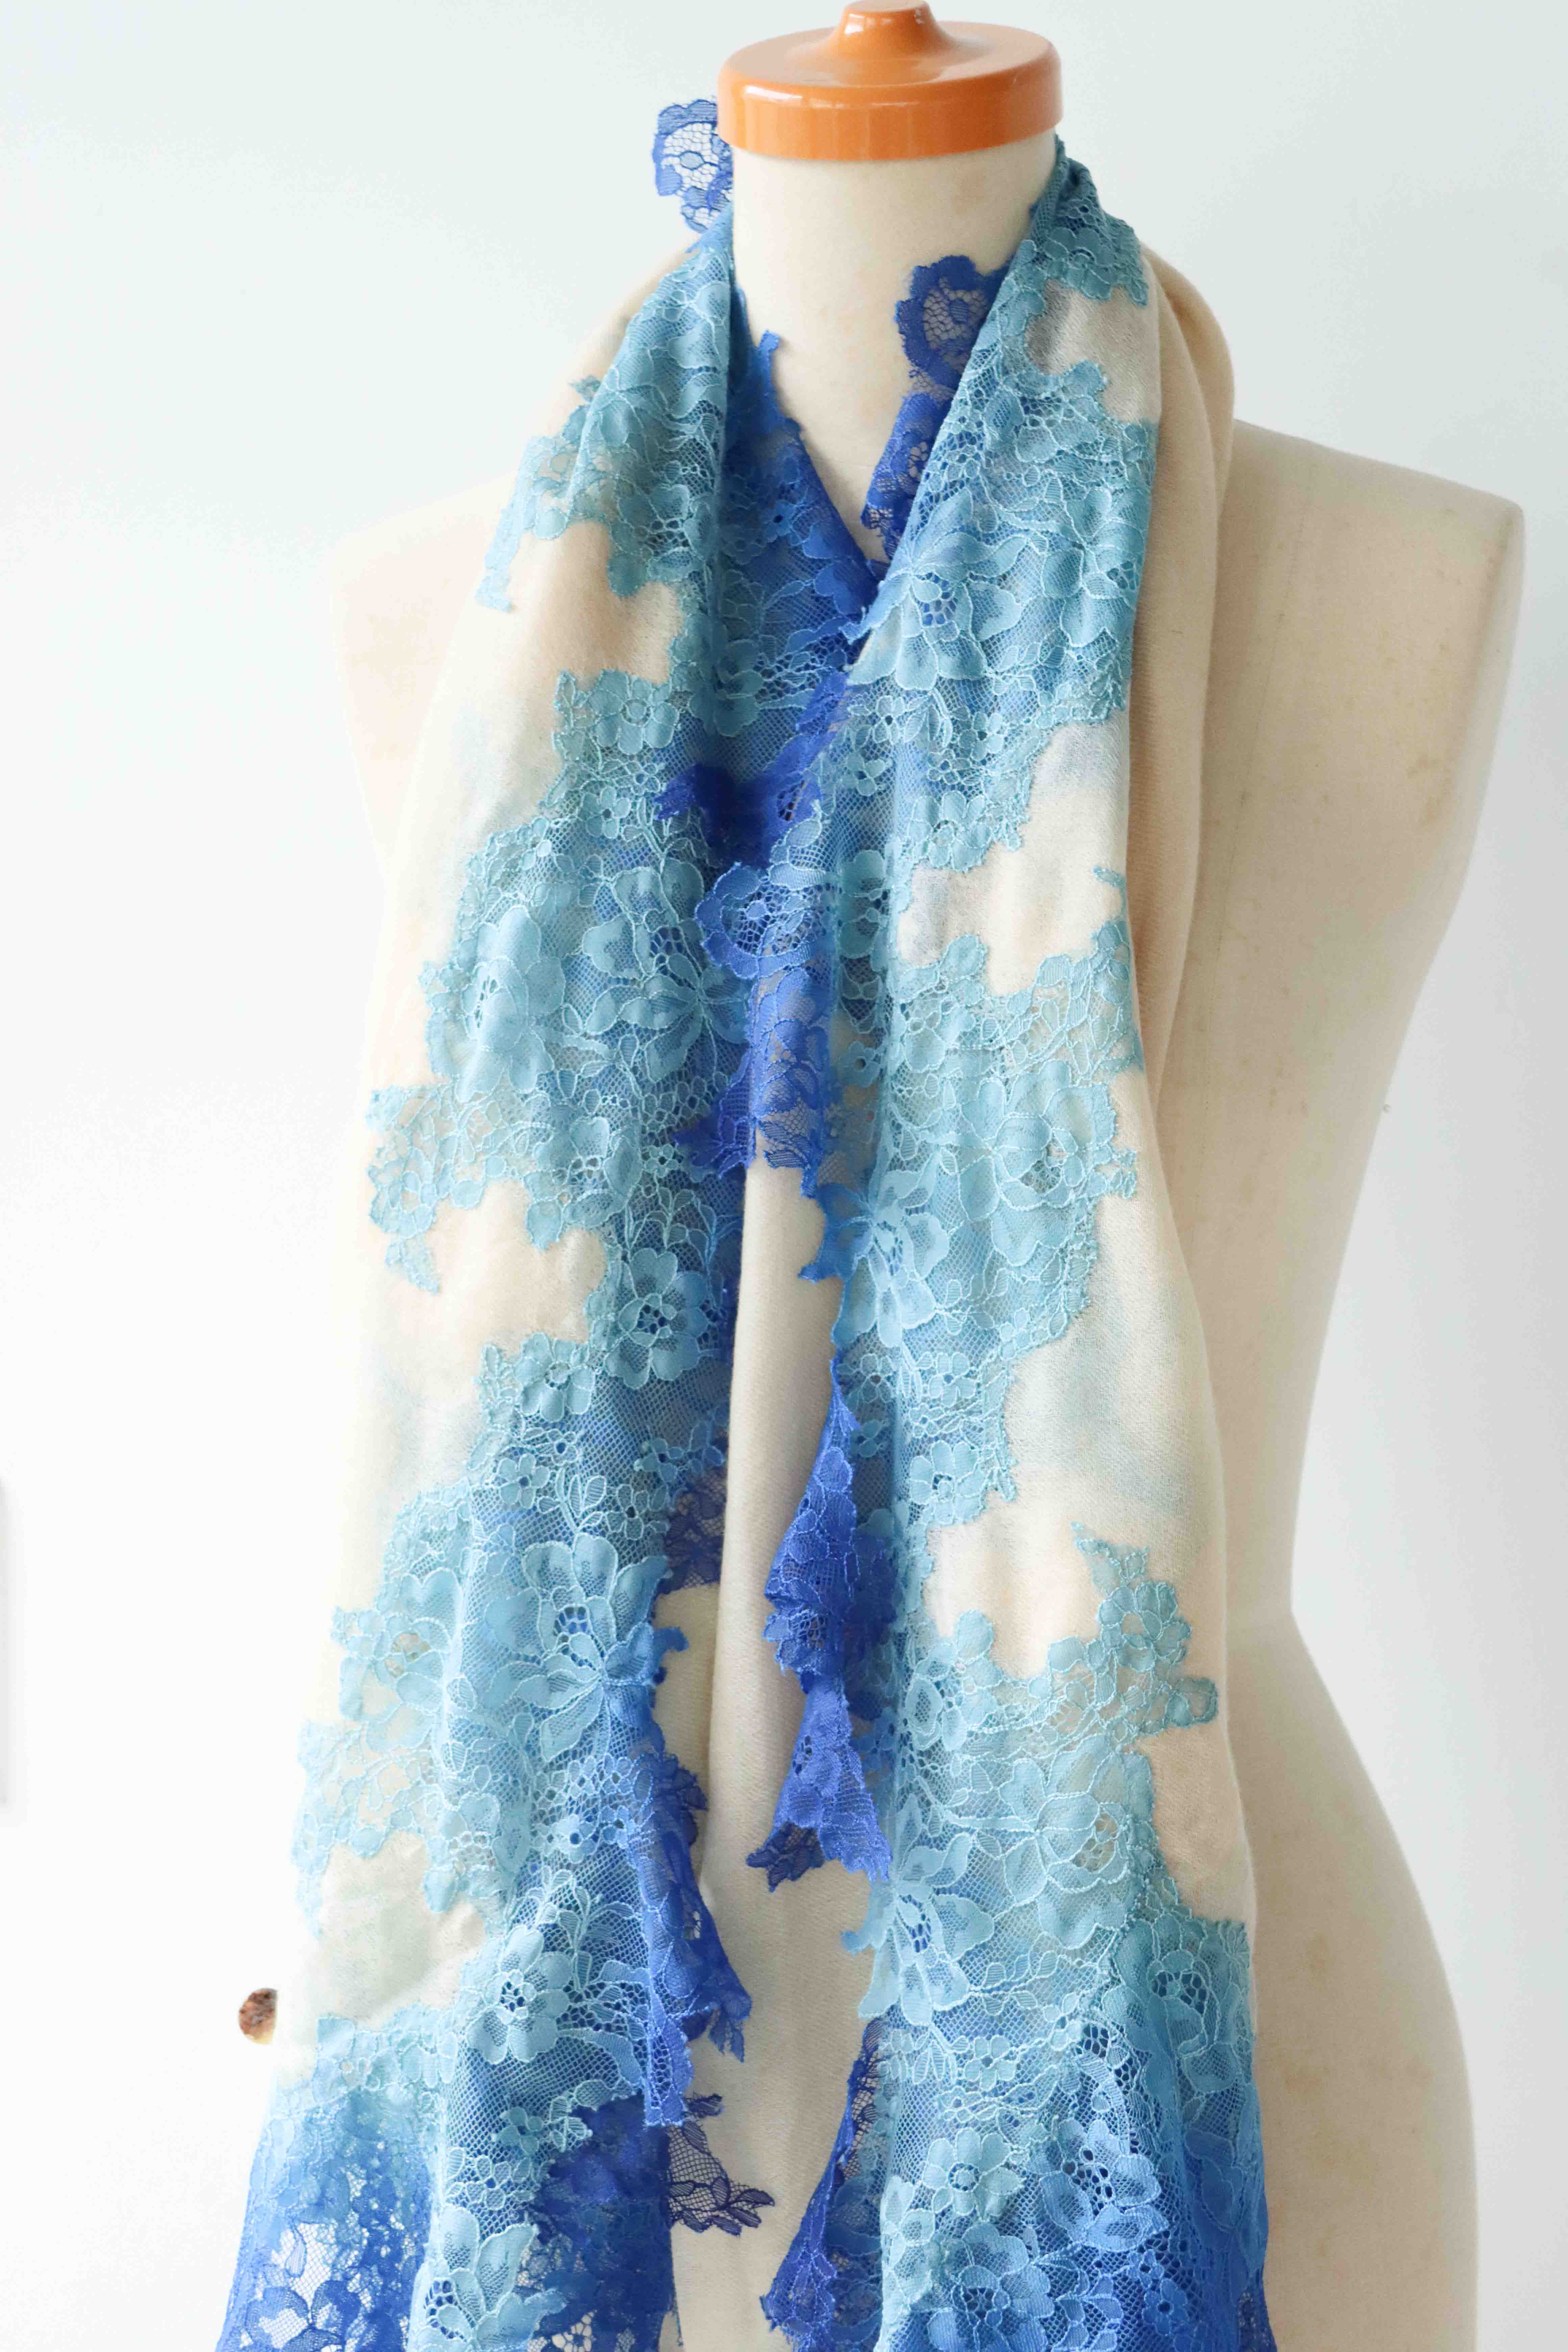 【0221直播】French Lace 100% Cashmere 圍巾